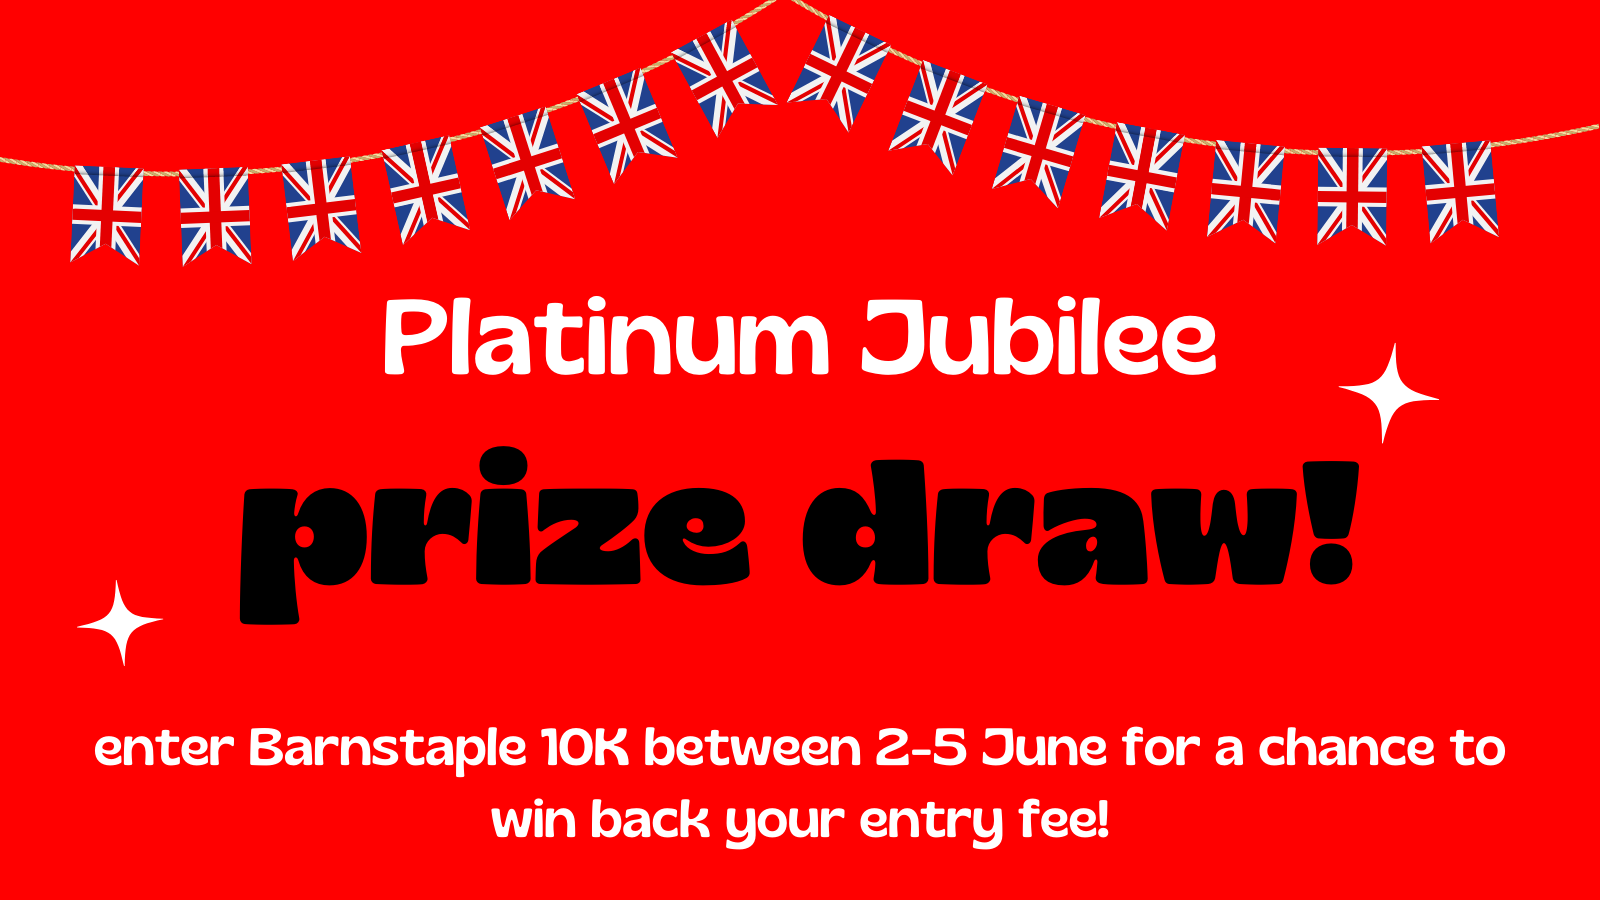 Jubilee prize draw